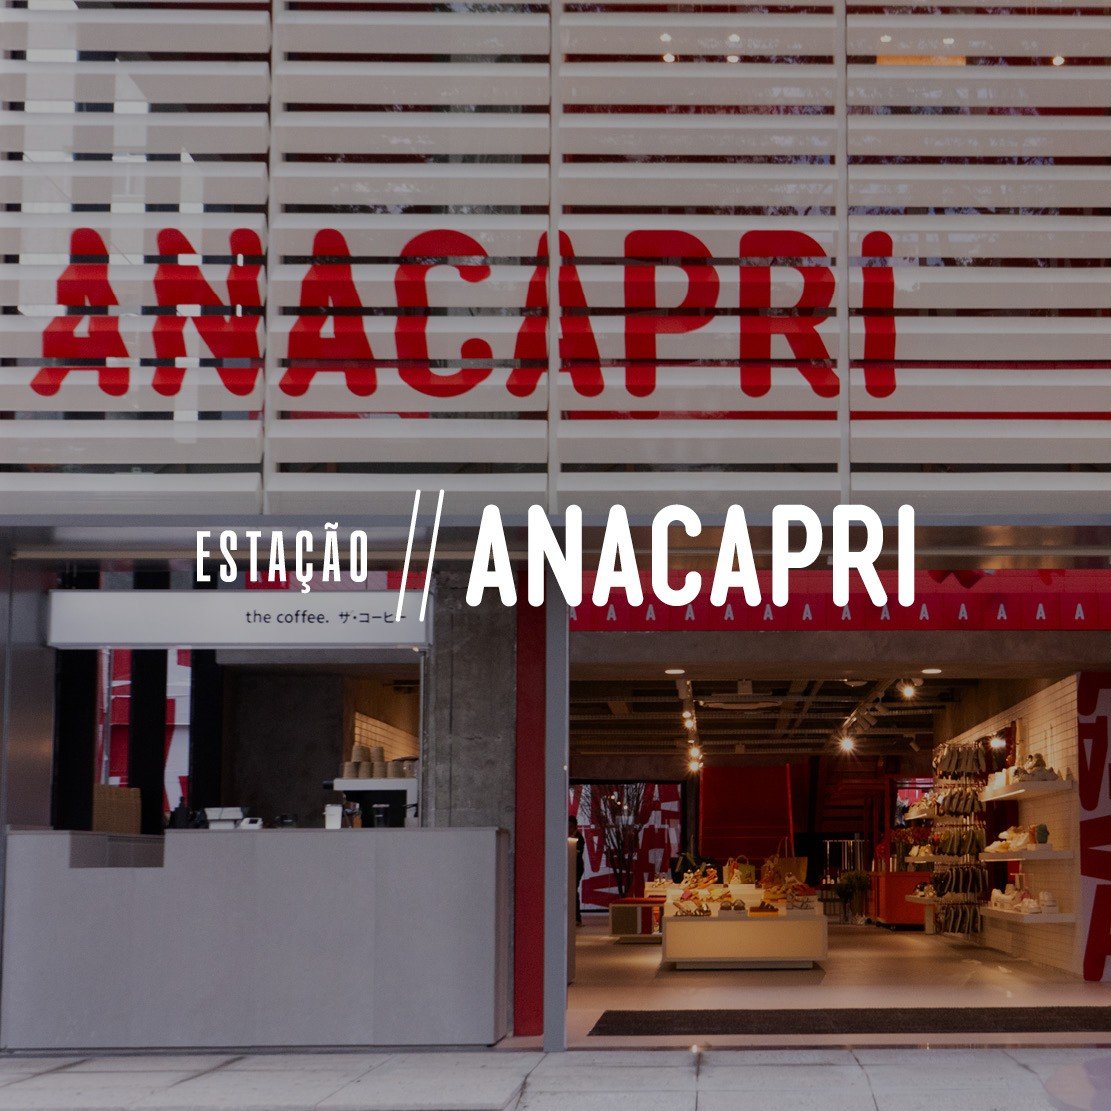 Próxima estação: a nova loja conceito Anacapri!
